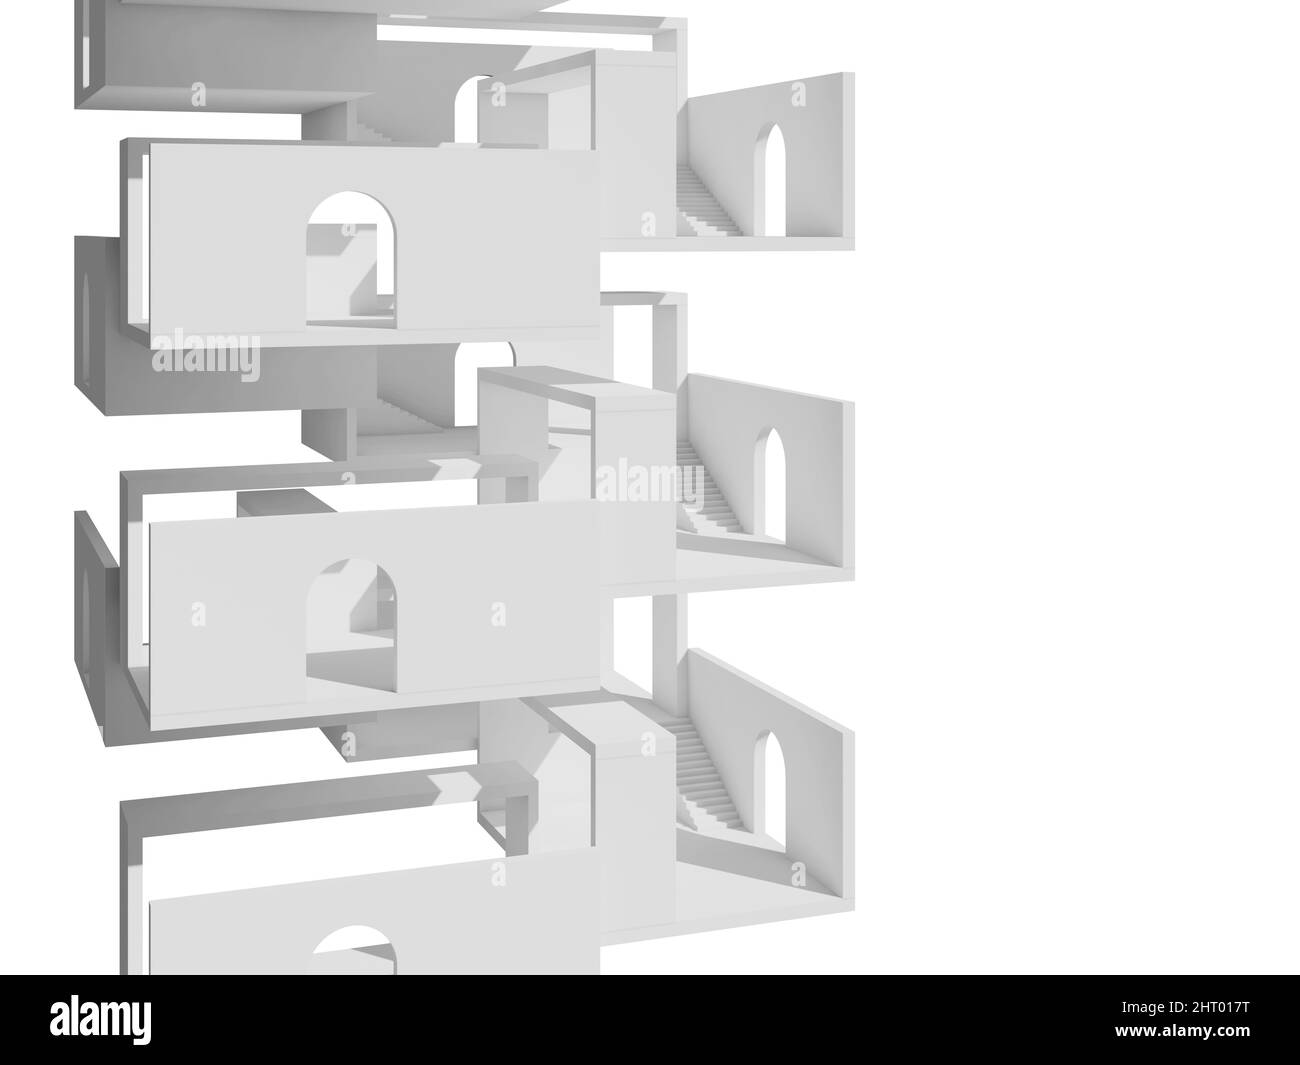 Abstrakter weißer Turm, isoliert auf weißem Hintergrund, leere Ebenen mit Treppen und Bogentüren, 3D Rendering Illustration Stockfoto